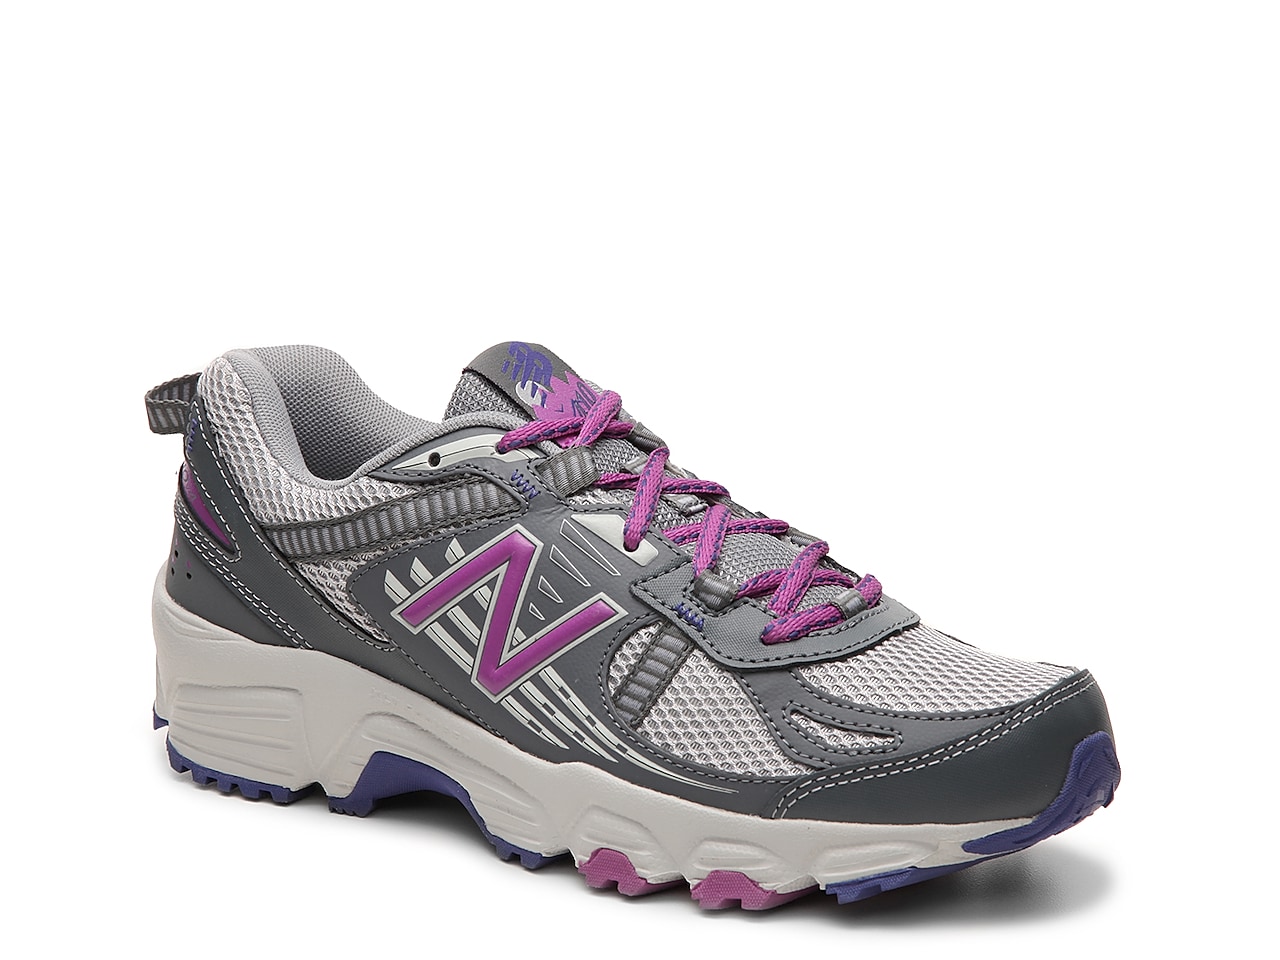 New Balance 410 v4 Trail Running Shoe - Women's | DSW